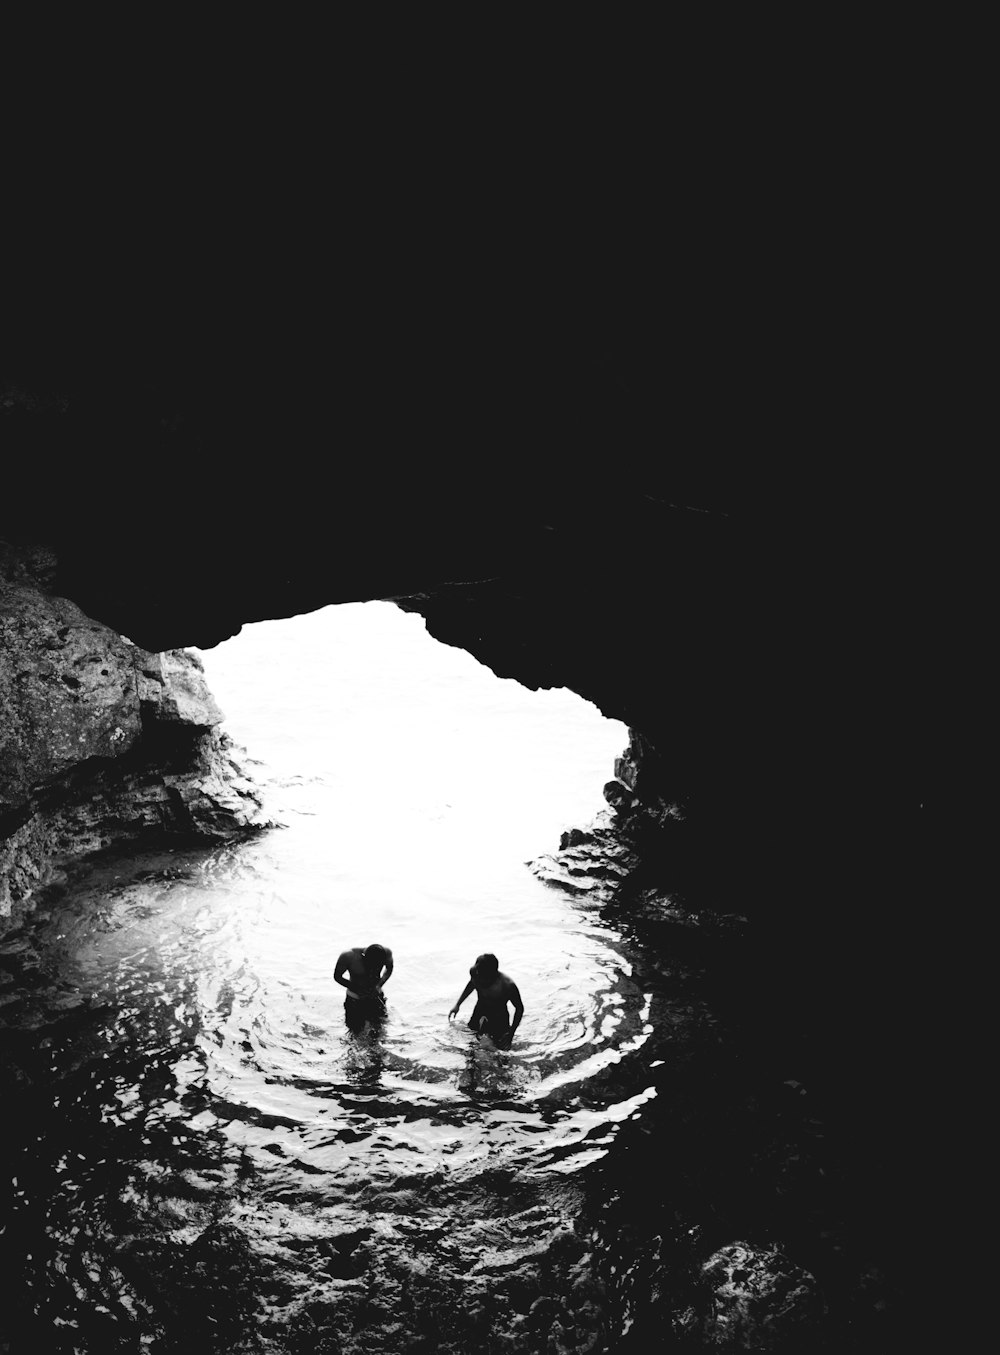 Foto en escala de grises de dos hombres en una cueva con cuerpo de agua